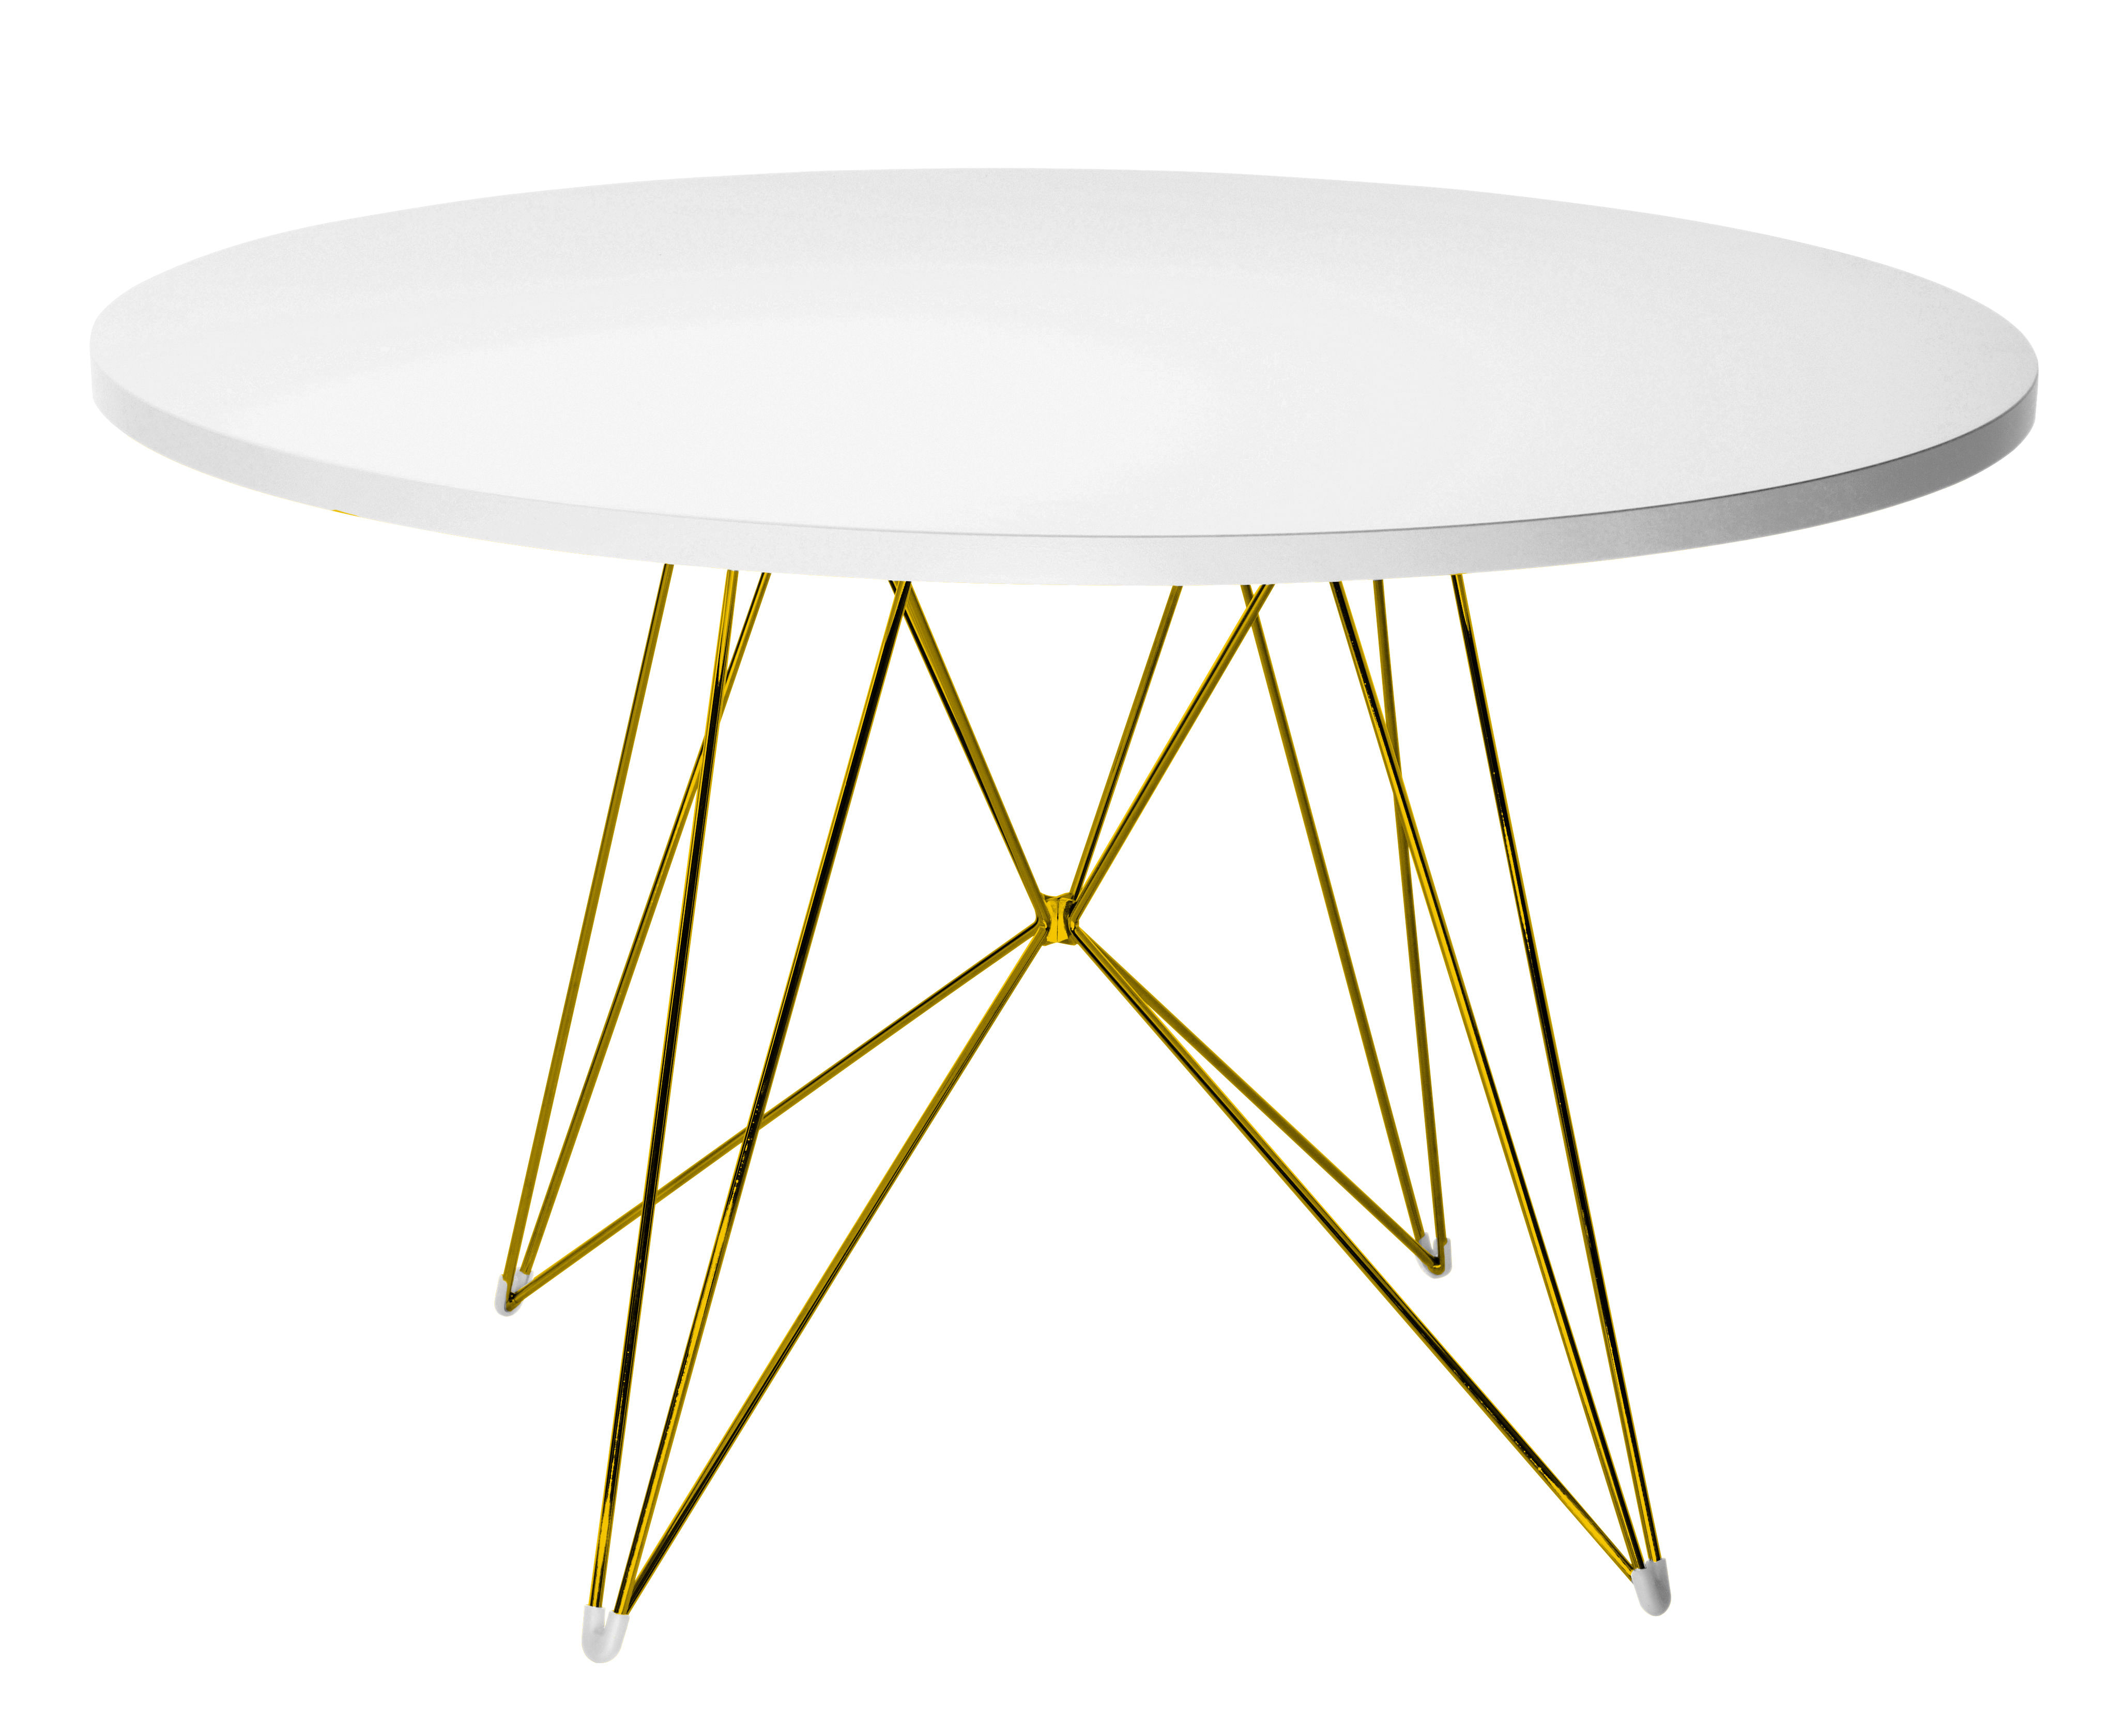 Perfekt Organisiert: Das Ideale Tischgestell Für Runde Tische